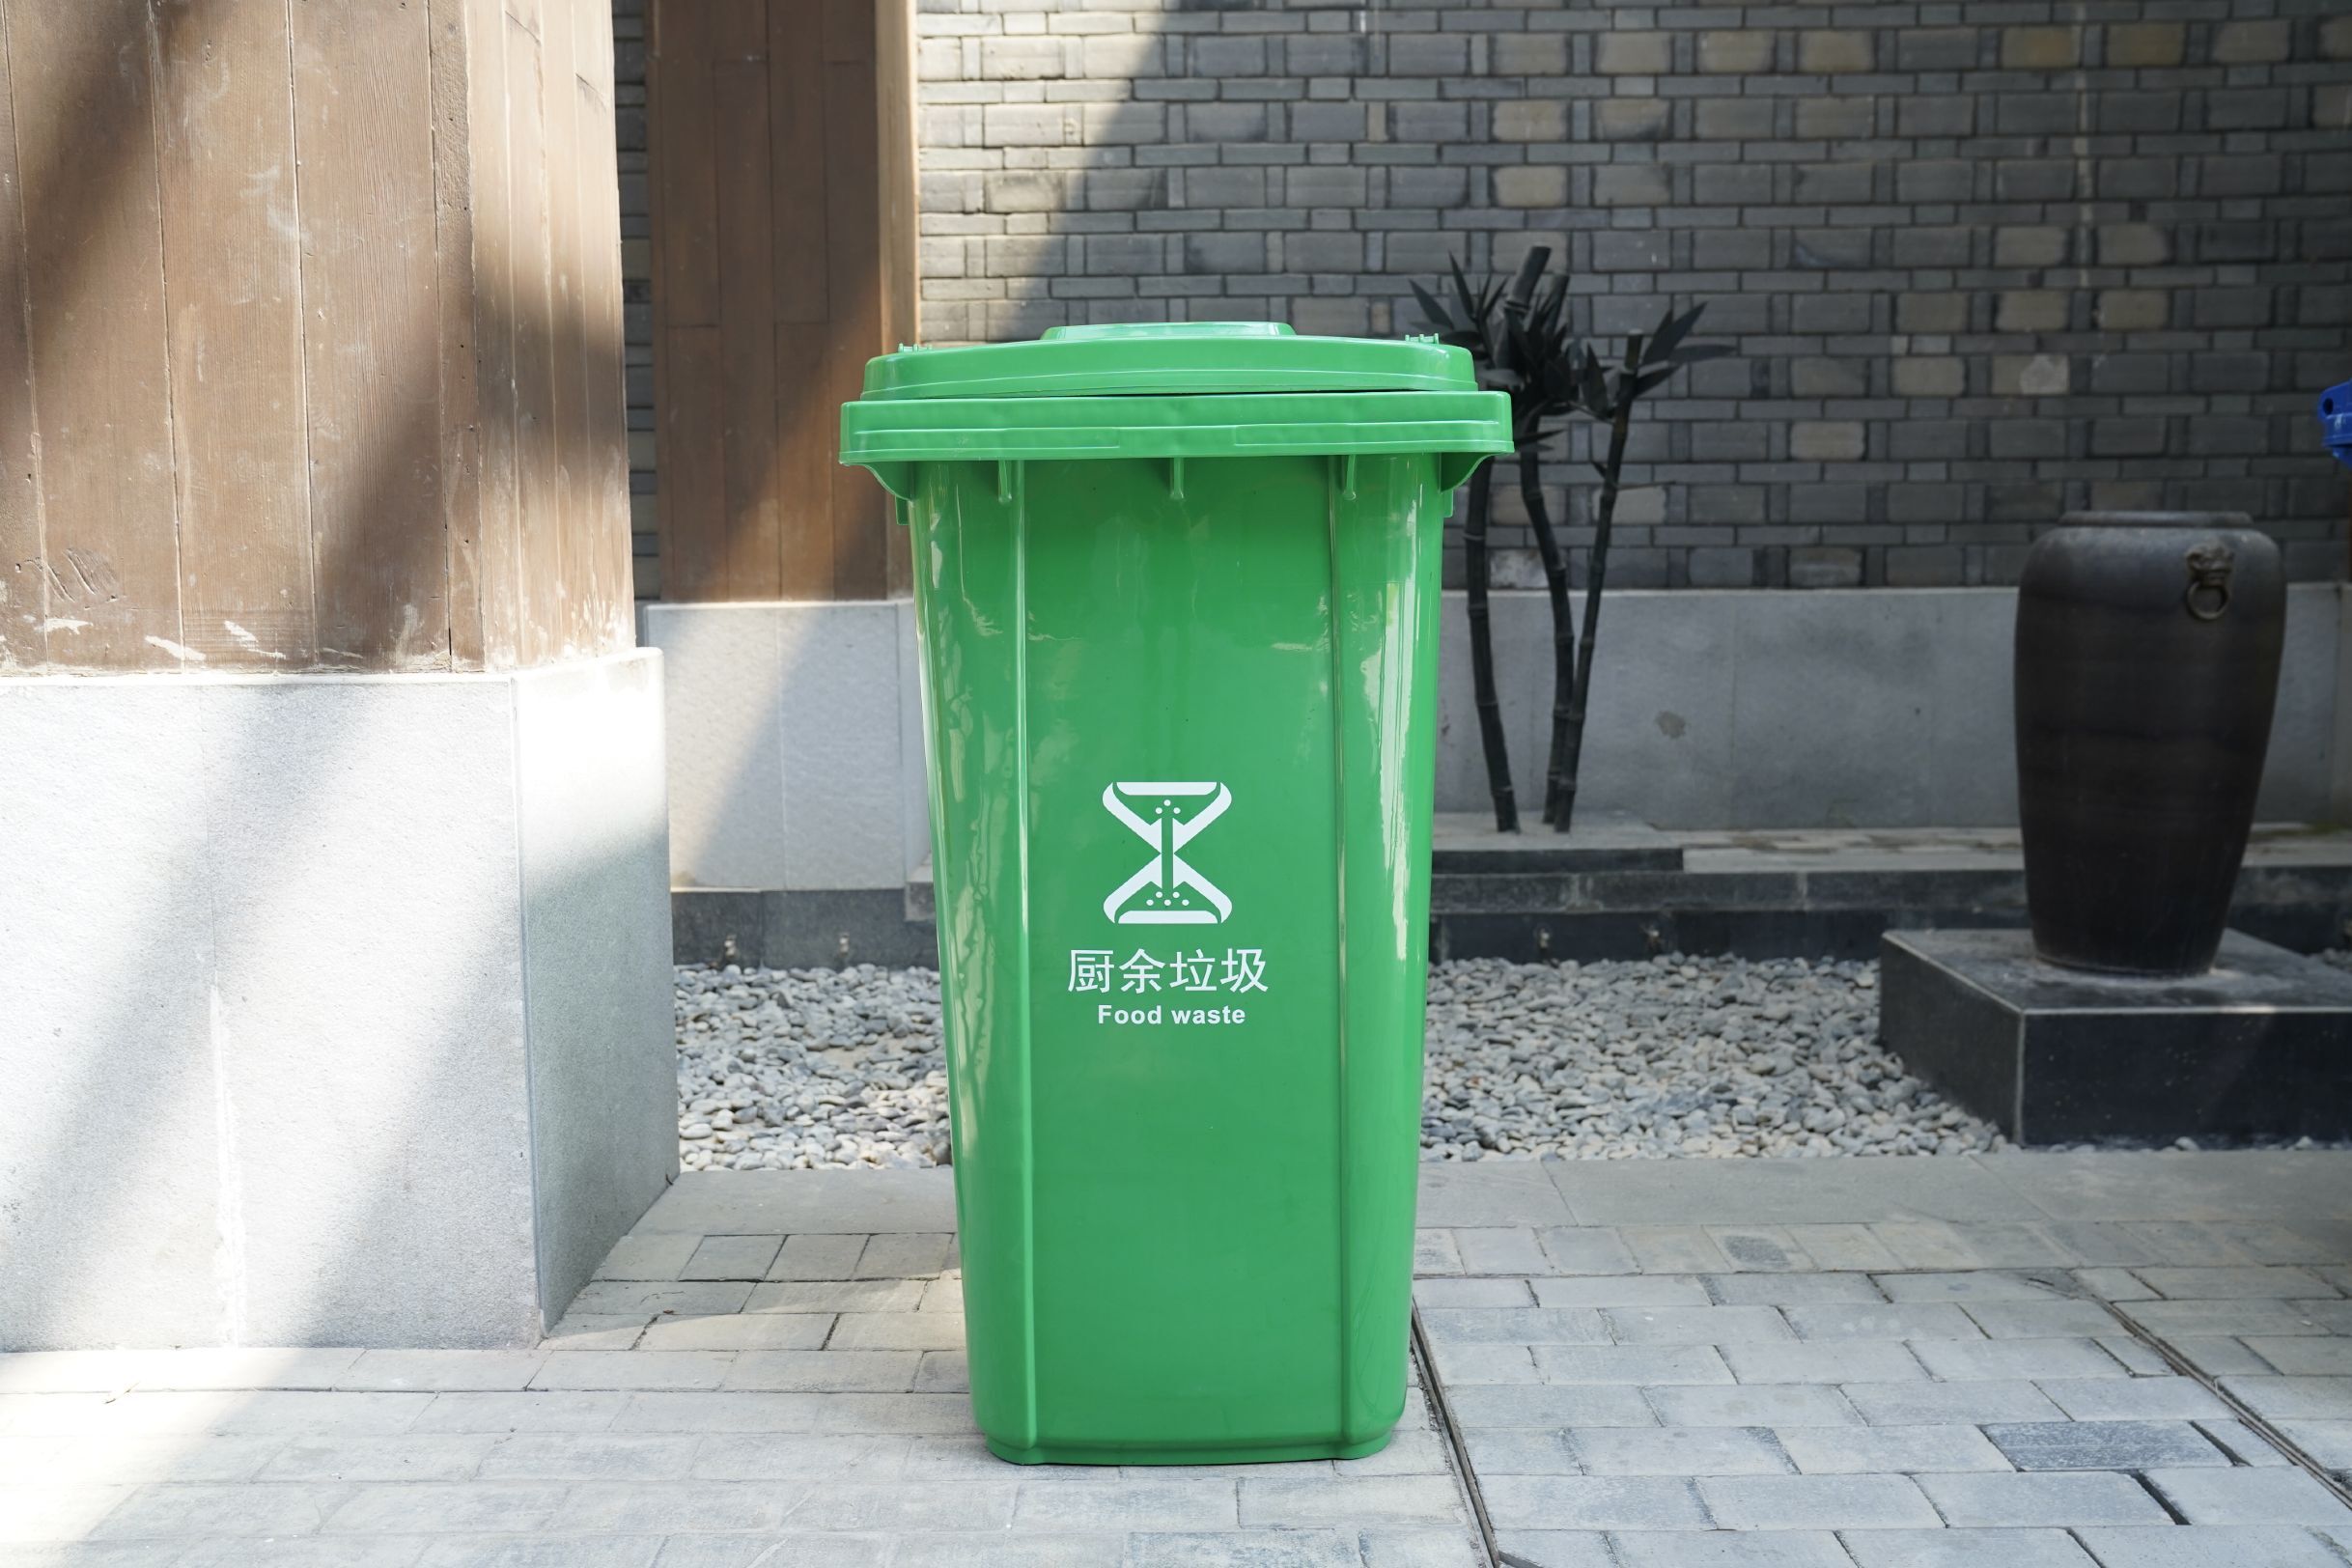 小区垃圾桶 垃圾分类垃圾桶标记